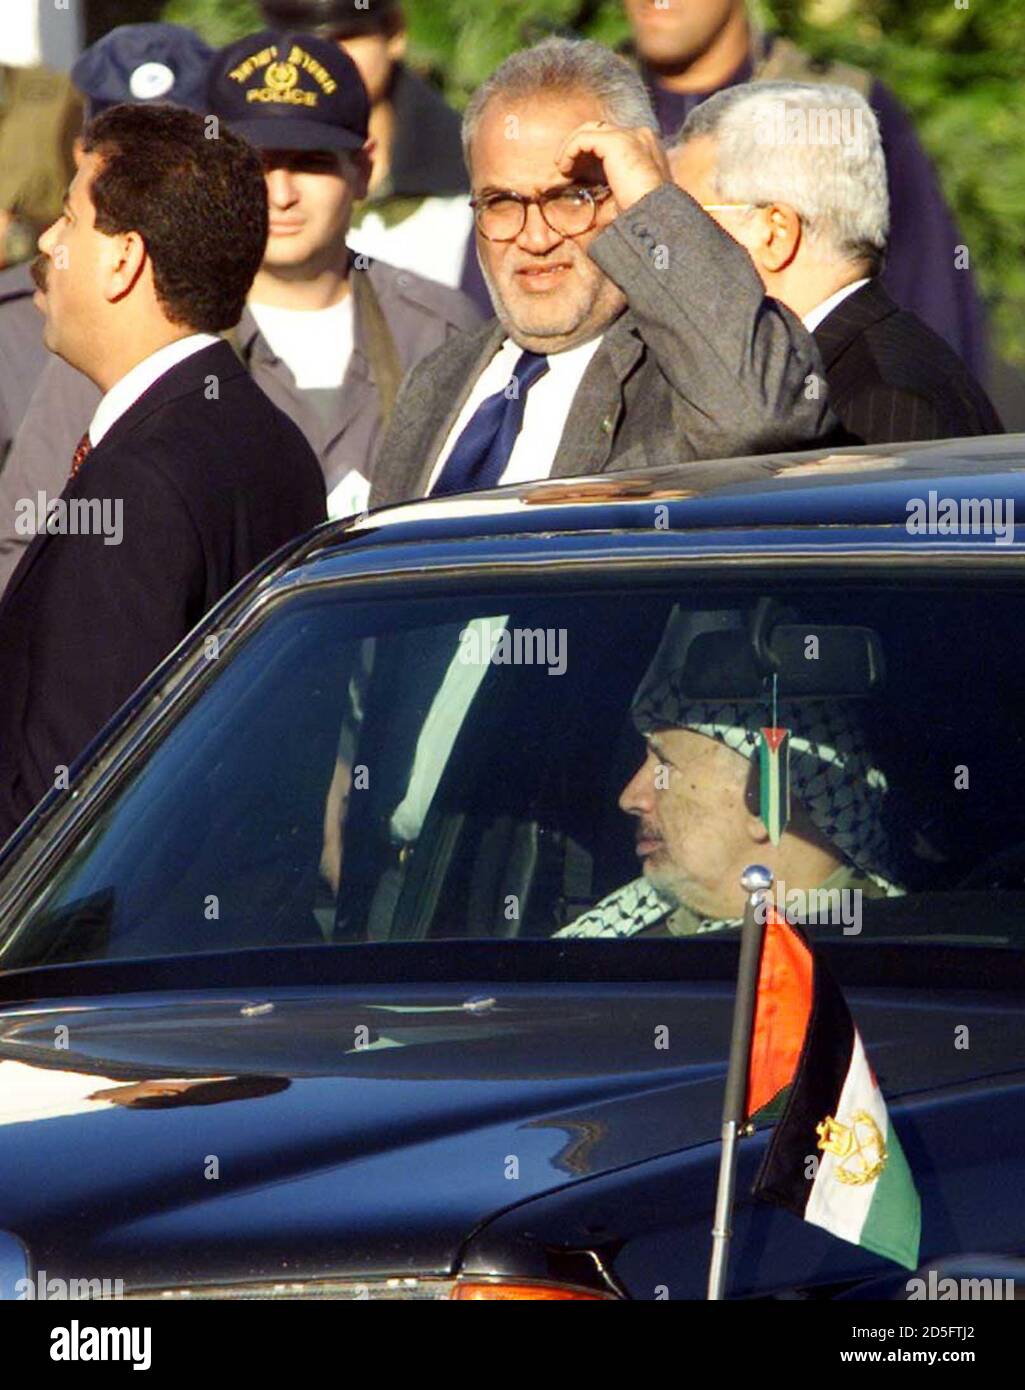 Der palästinensische Präsident Yasser Arafat wartet in seiner Limousine darauf, dass der israelische Ministerpräsident Benjamin Netanjahu ihn zum Dreiergipfel mit US-Präsident Bill Clinton am 15. Dezember begrüßt. Sich auf das Auto lehnend und seine Augen vor der Morgensonne beschönend, ist Saeb Erekat, Chef-palästinensischer Unterhändler in Gesprächen mit den Palästinensern. JWH/FMS Stockfoto